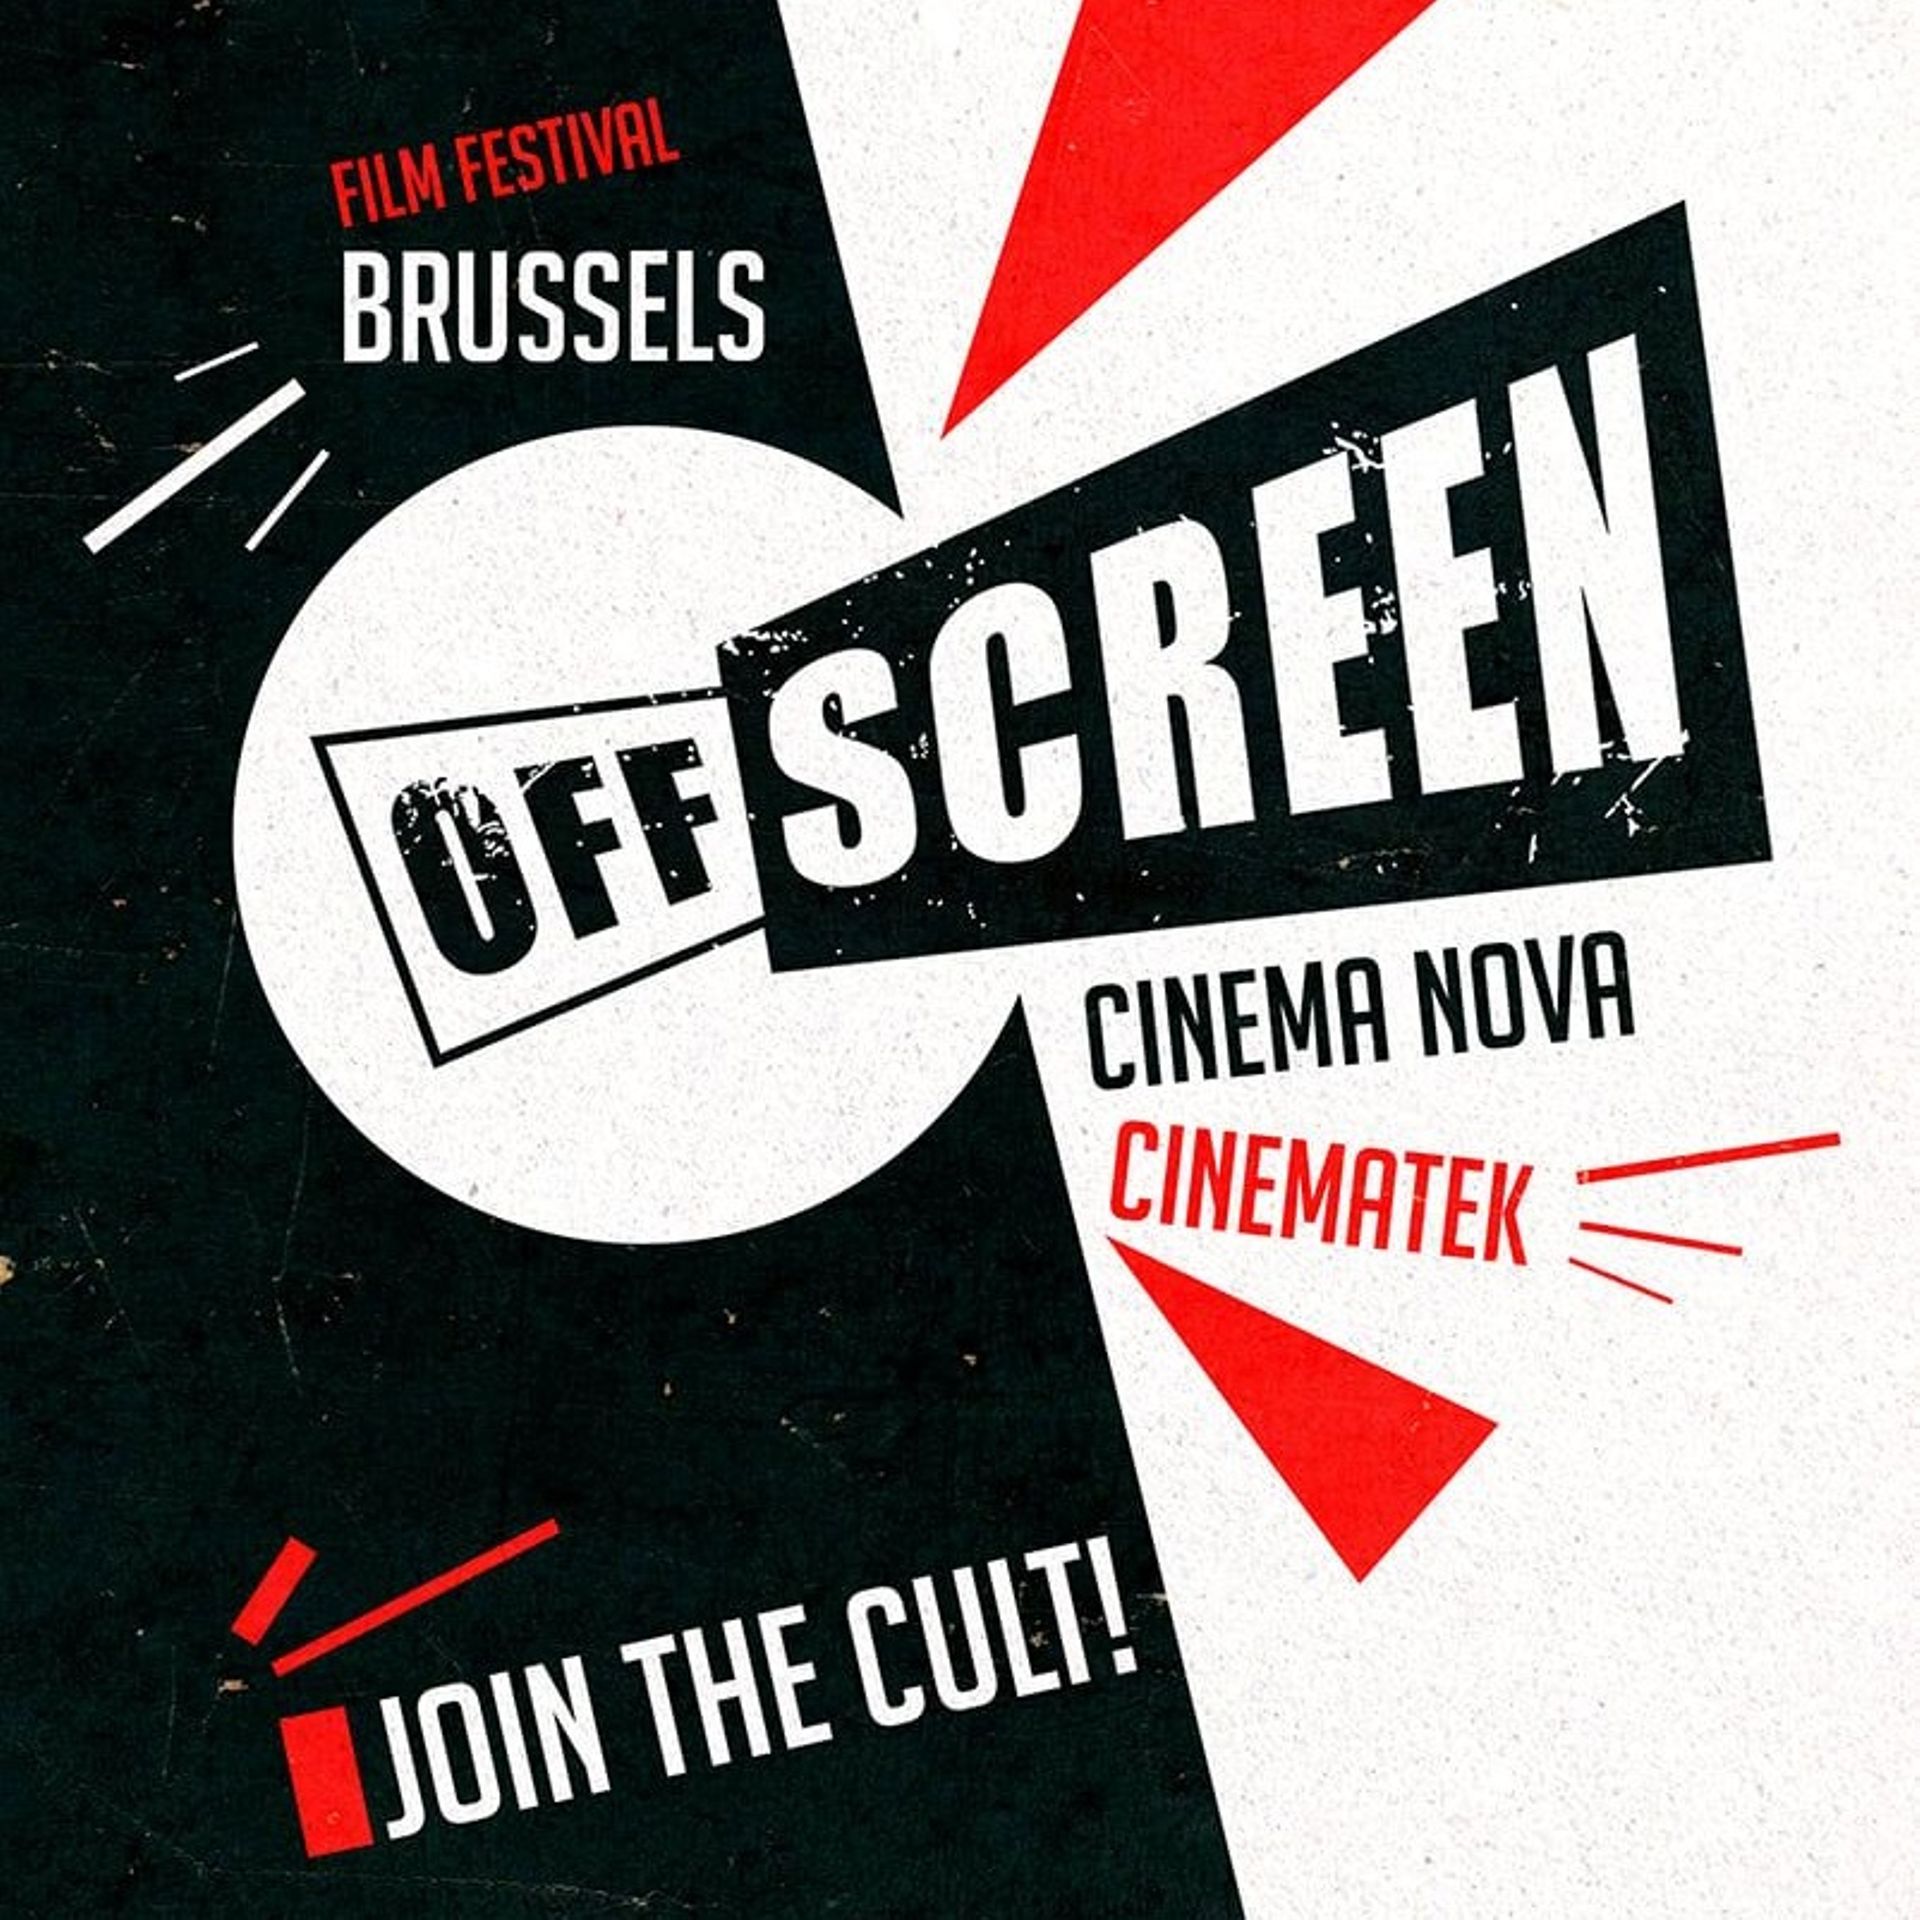 Le festival du film Offscreen est le rendez-vous incontournable des cinéphiles ayant un goût prononcé pour le non conventionnel.
Cet événement annuel, non compétitif, est une vitrine pour les films indépendants et inédits, les classiques cultes et les gen